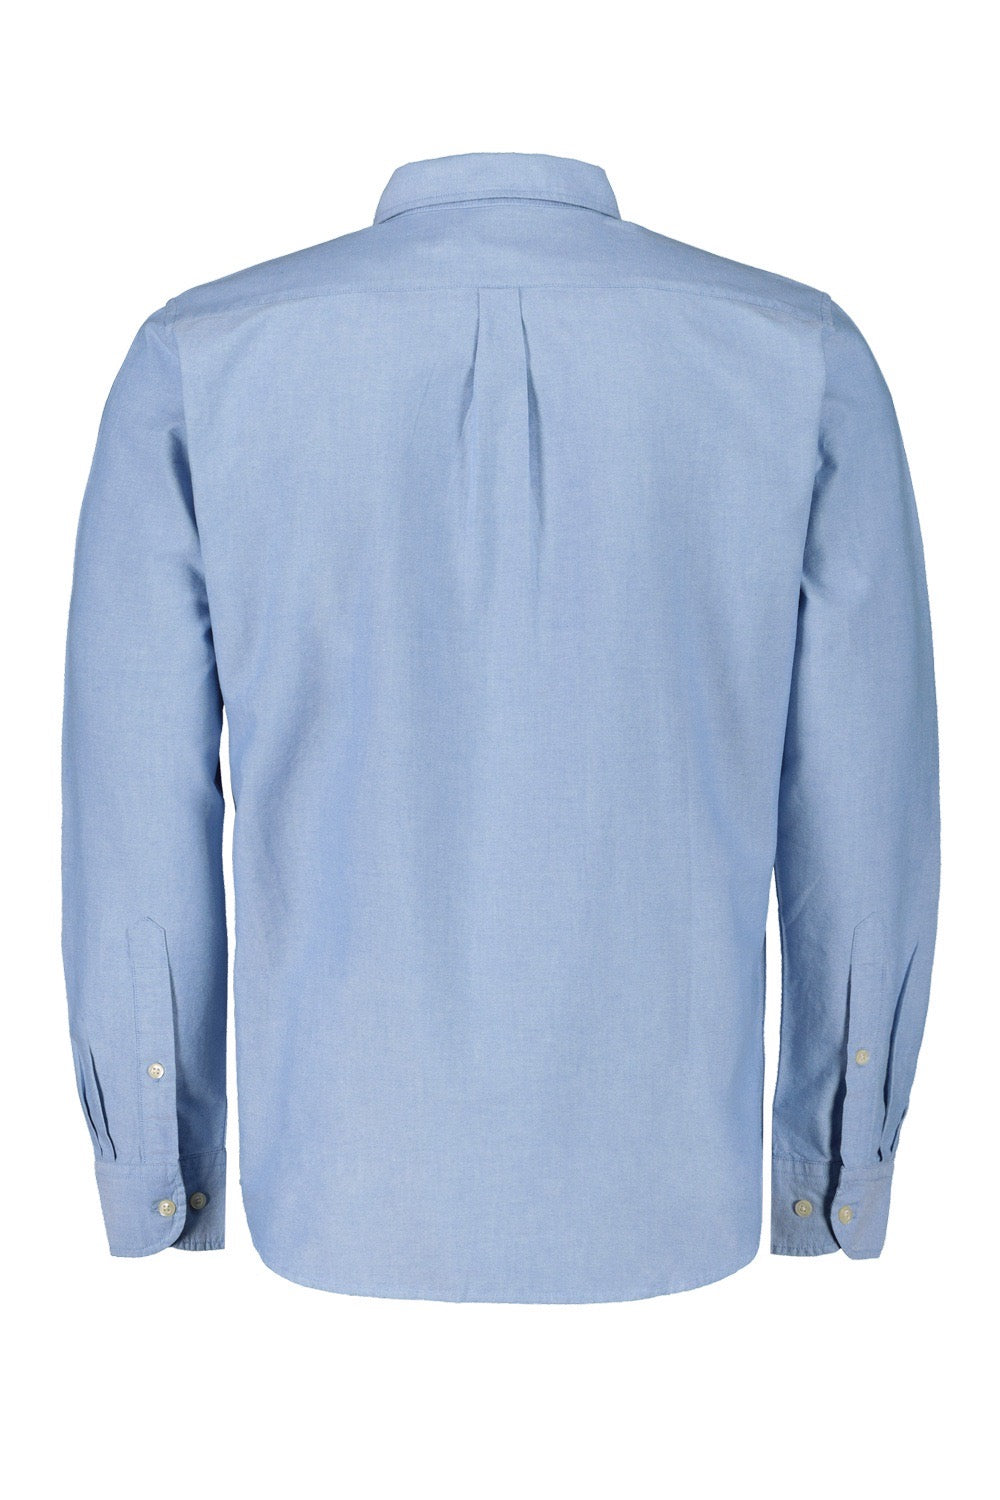 Camicia manica Lunga Oxford Azzurro